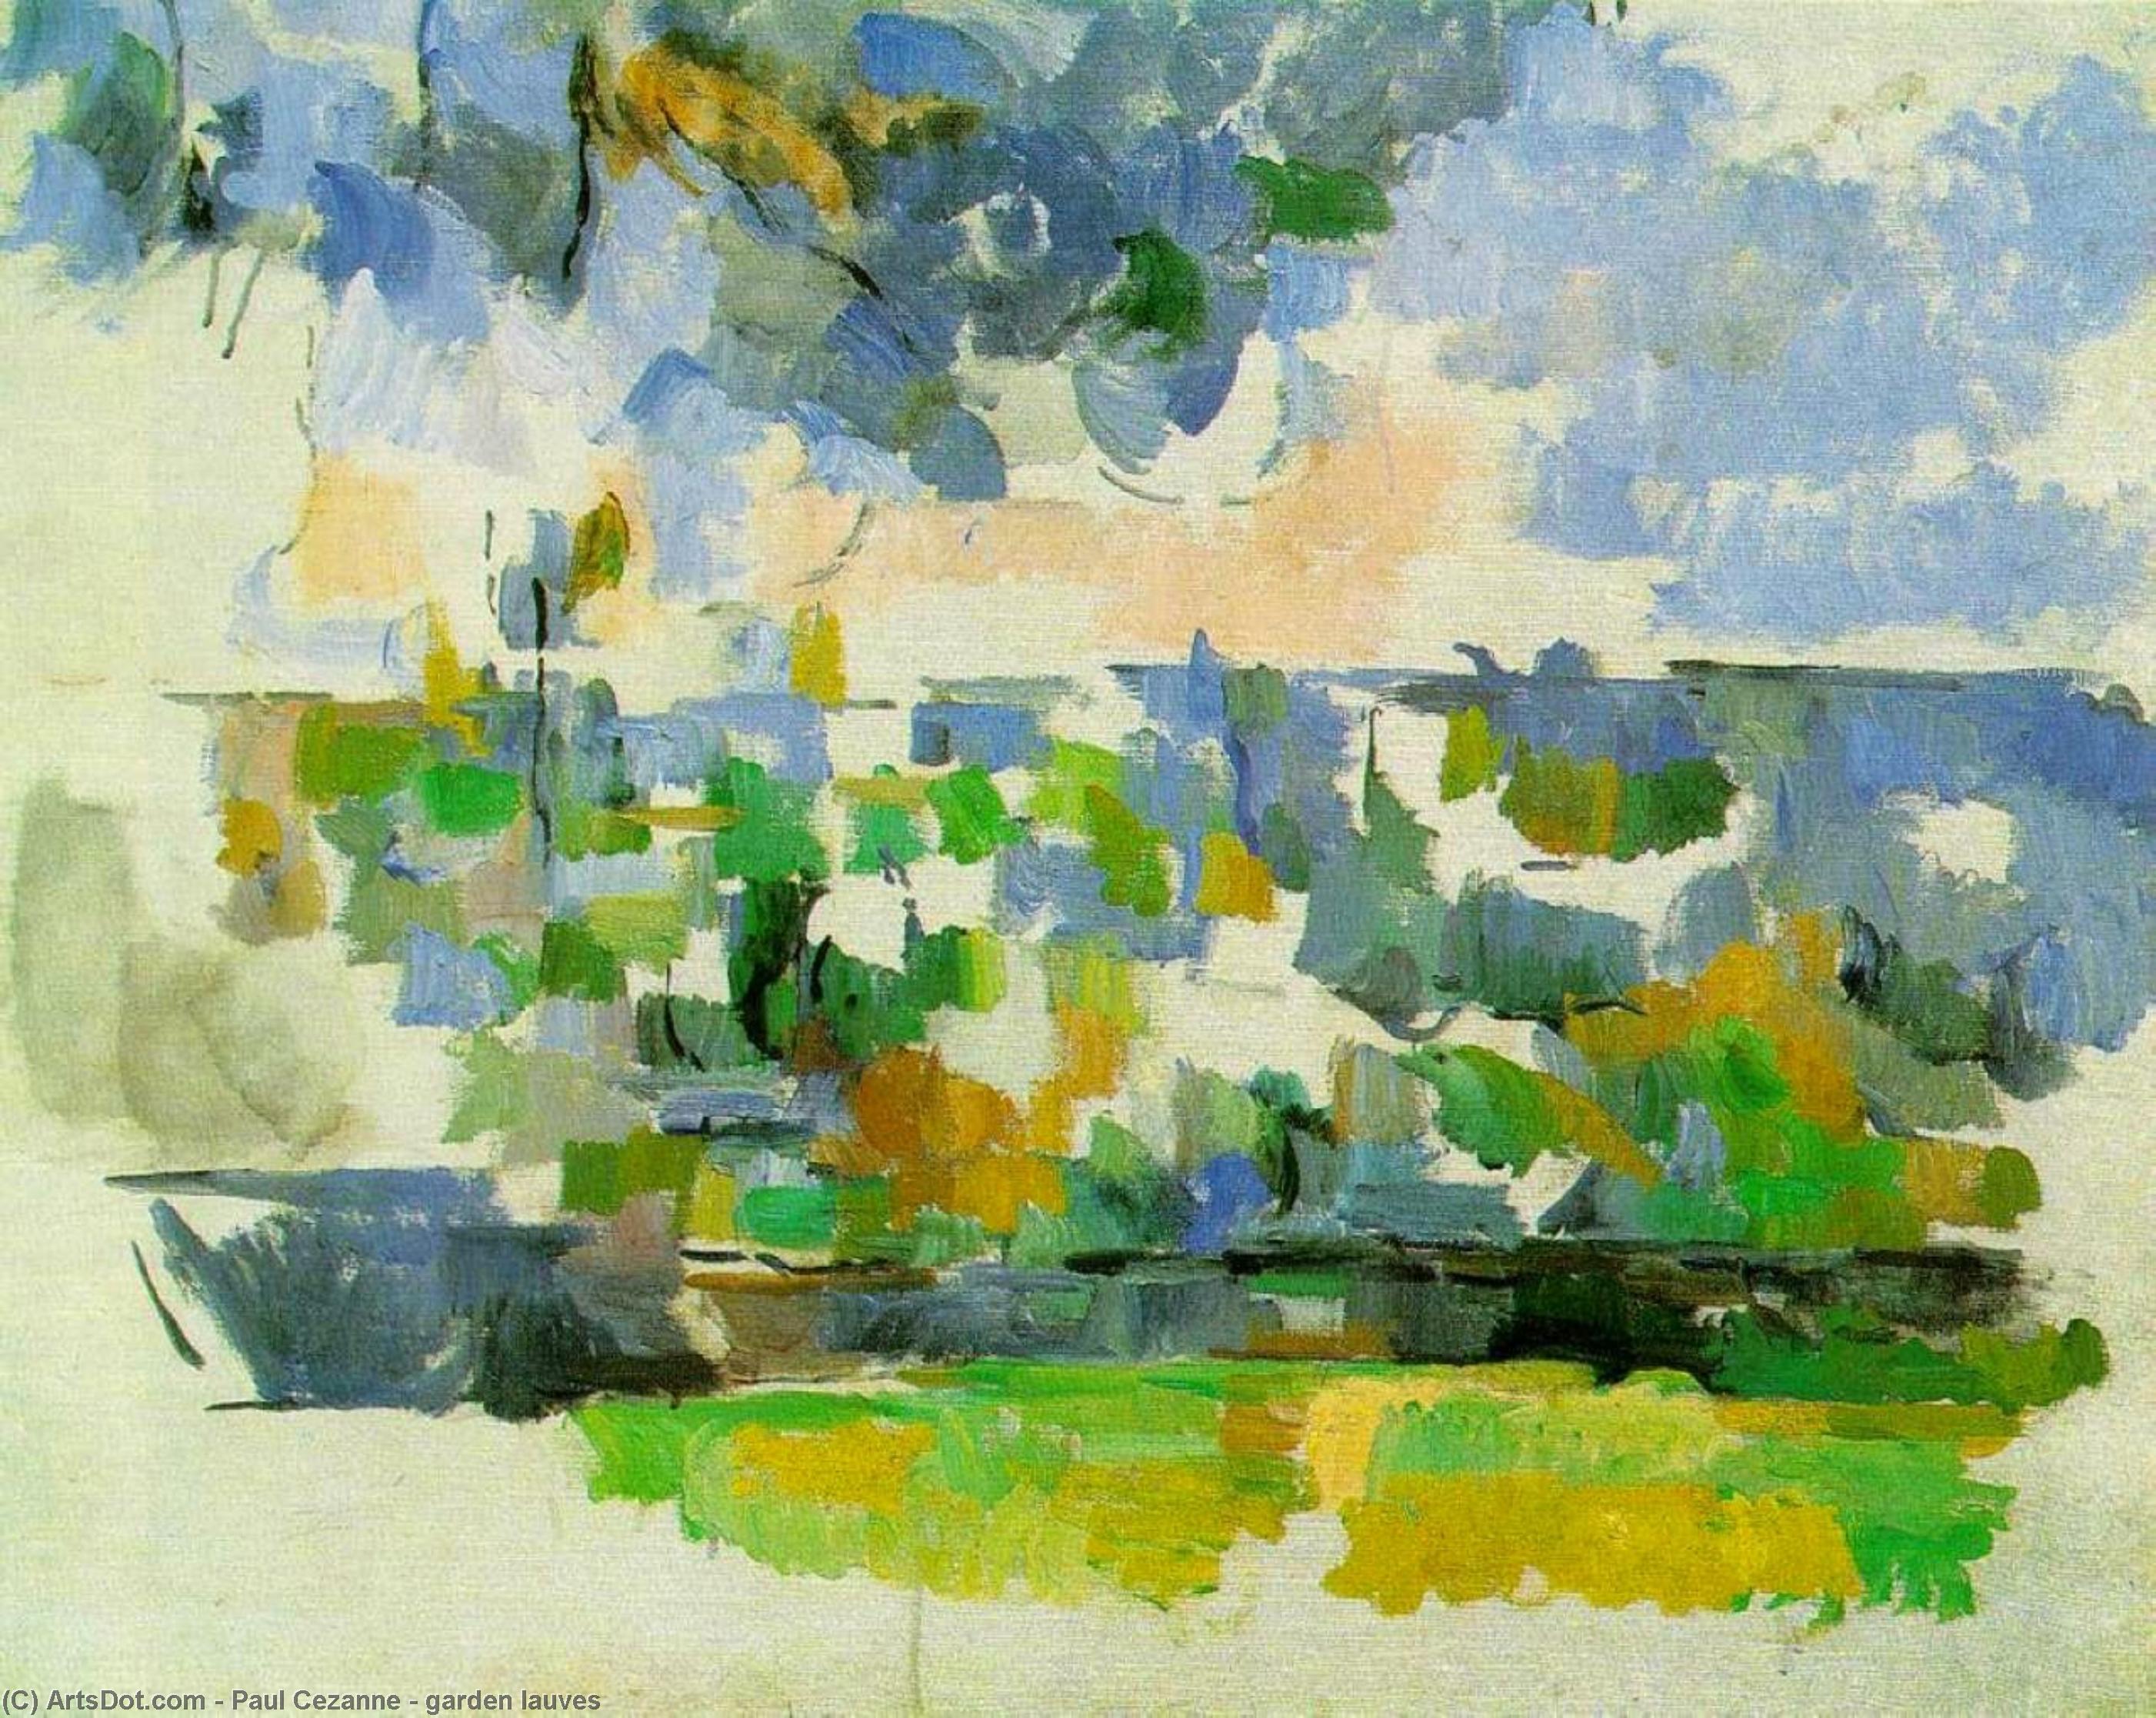 WikiOO.org - Encyclopedia of Fine Arts - Lukisan, Artwork Paul Cezanne - garden lauves